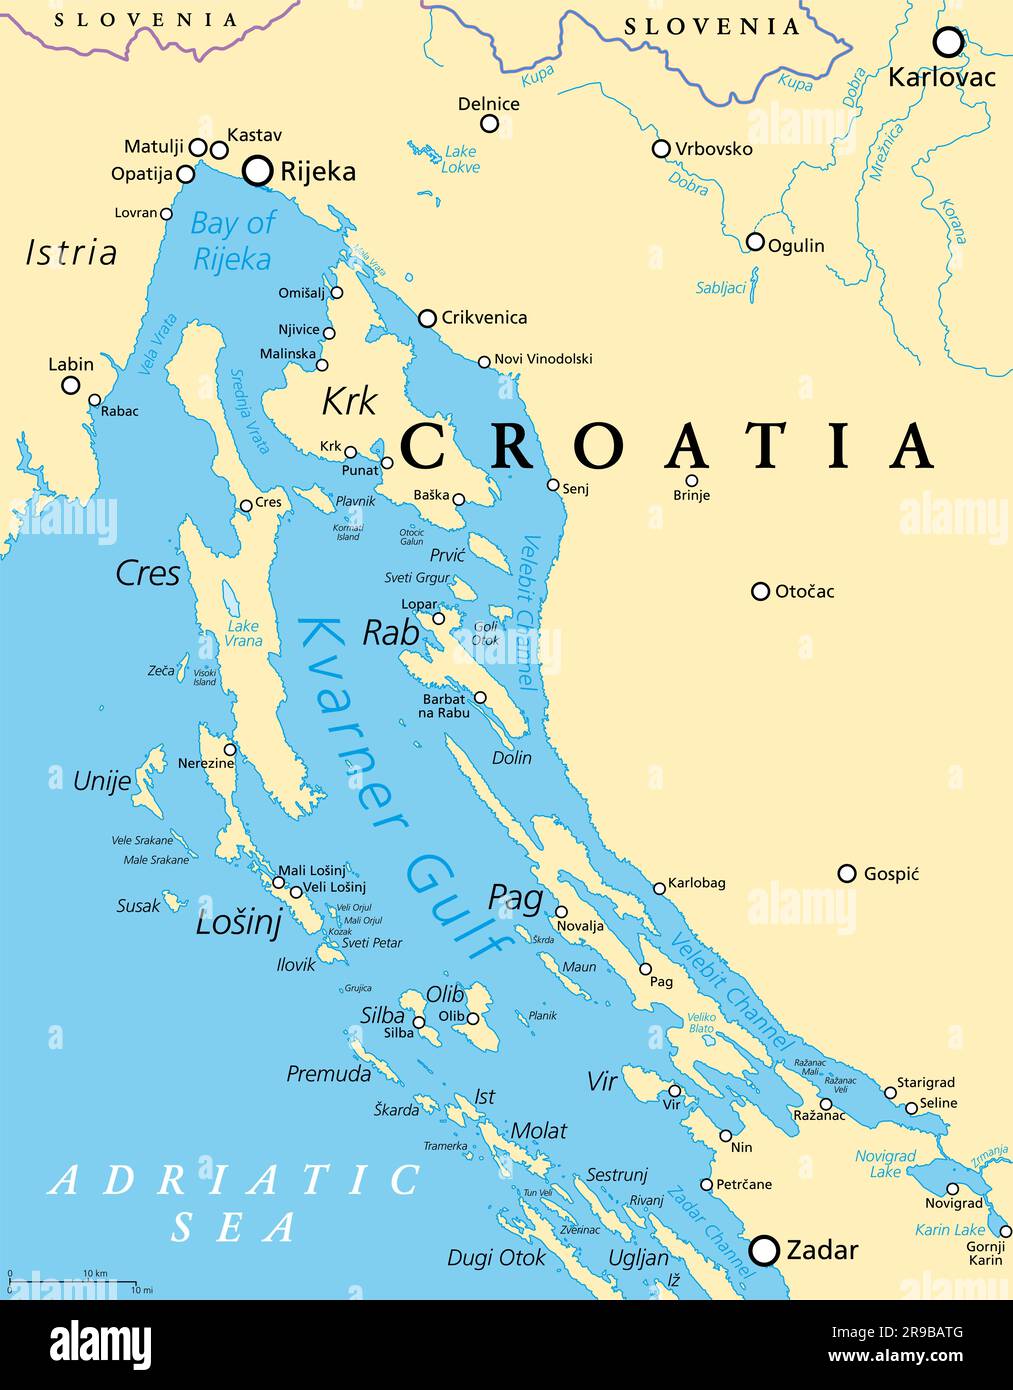 Kvarner Golf, Teil der inneren Gewässer Kroatiens, politische Karte. Auch bekannt als Kvarner Bay in der nördlichen Adria. Stockfoto